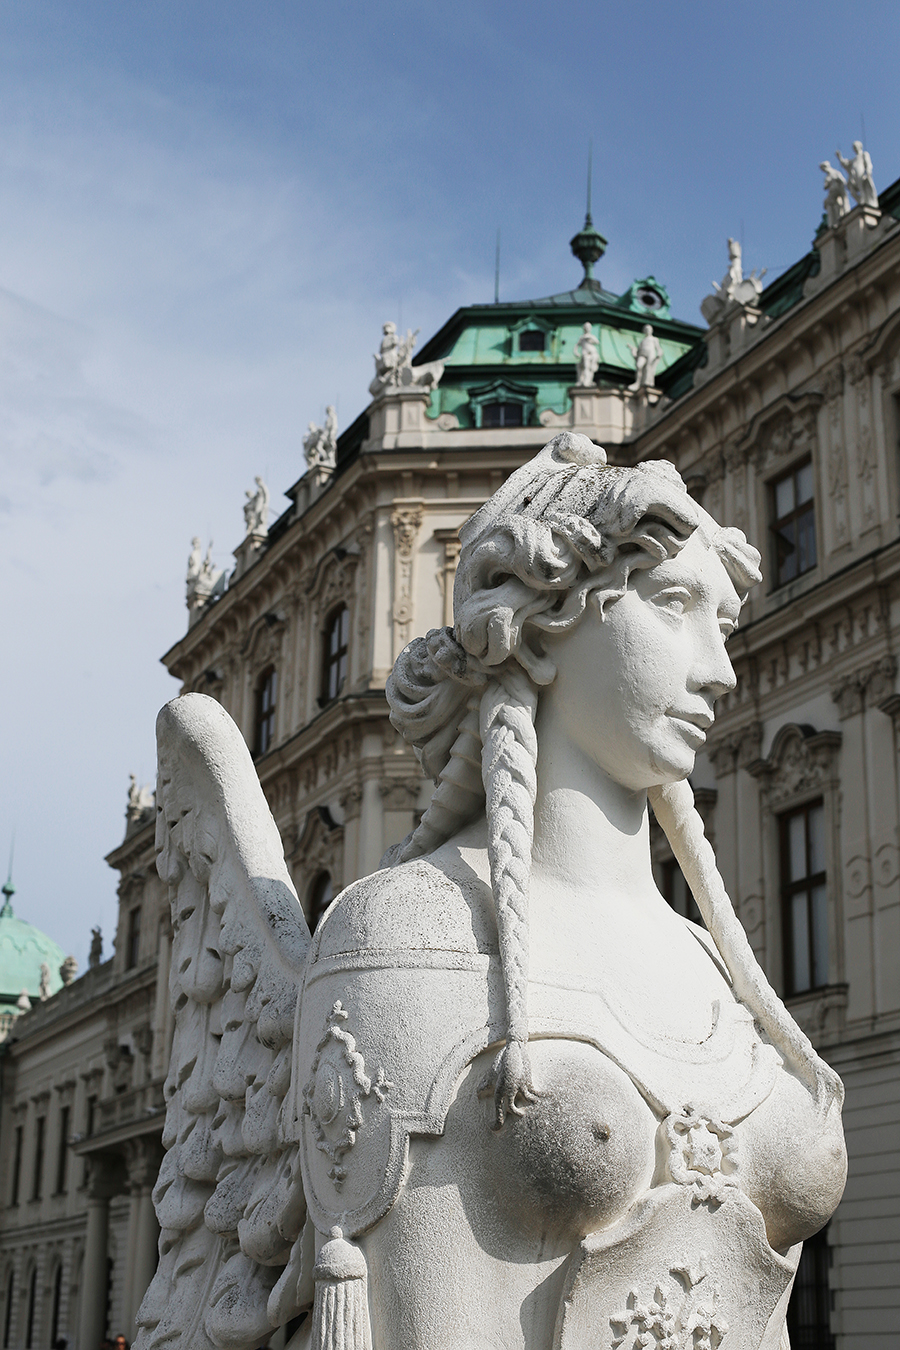 20 Days, 20 Cities, 6 Countries - Part 1: Vienna, Austria